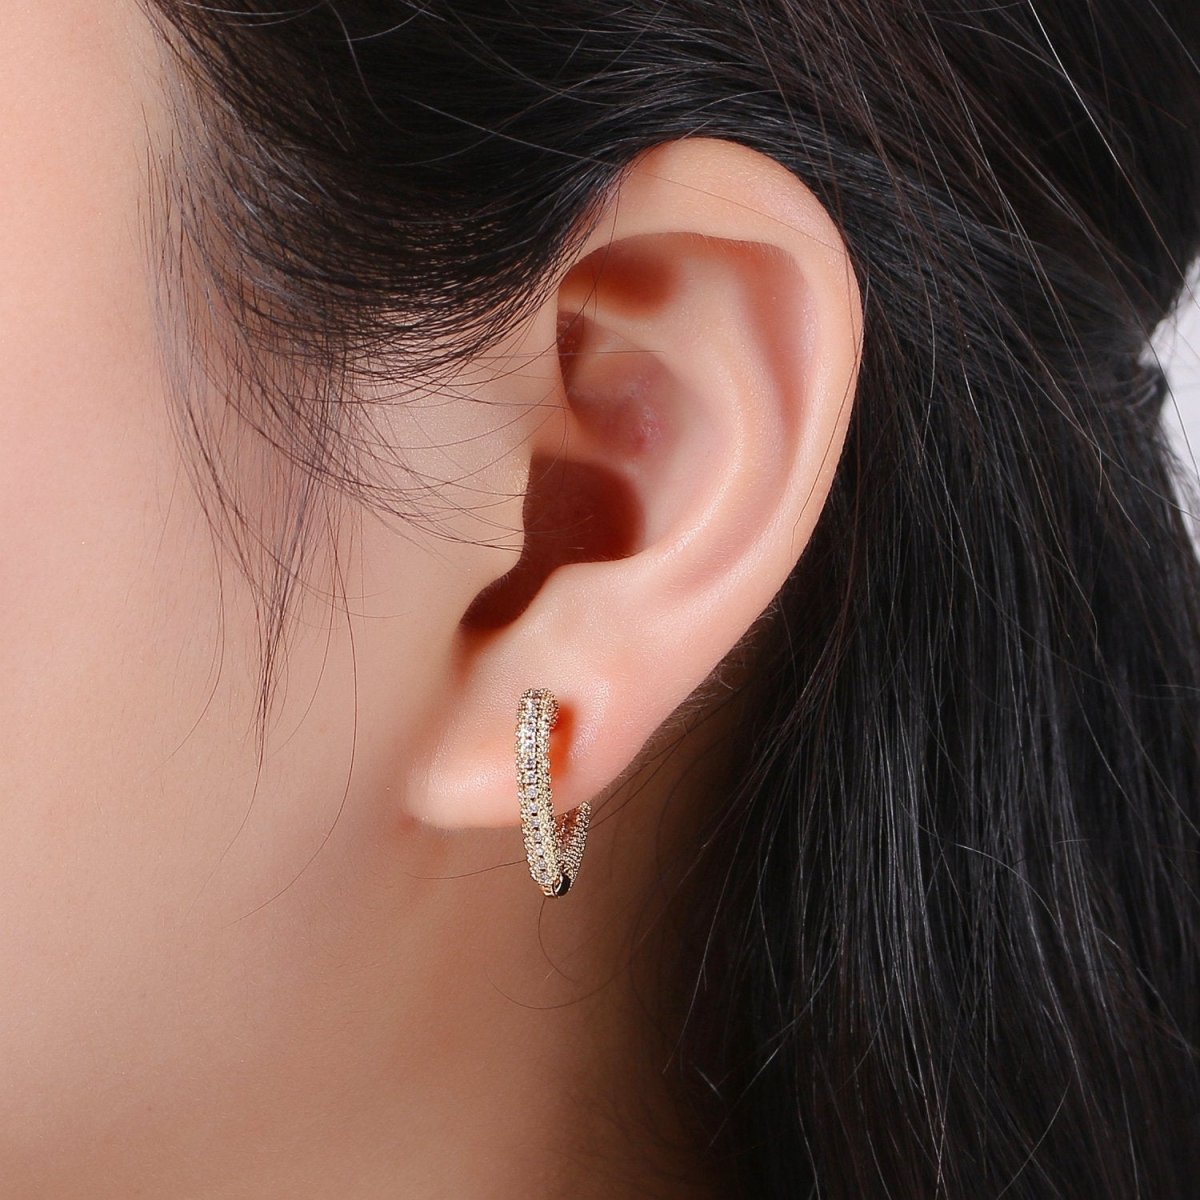 Micro Pave Heart Hoop Earrings, Cubic Hoop Huggie Earrings, Gold Hoop Earrings, Dainty Hoop Earrings, Minimalist Hoop Earring, K-549 - DLUXCA